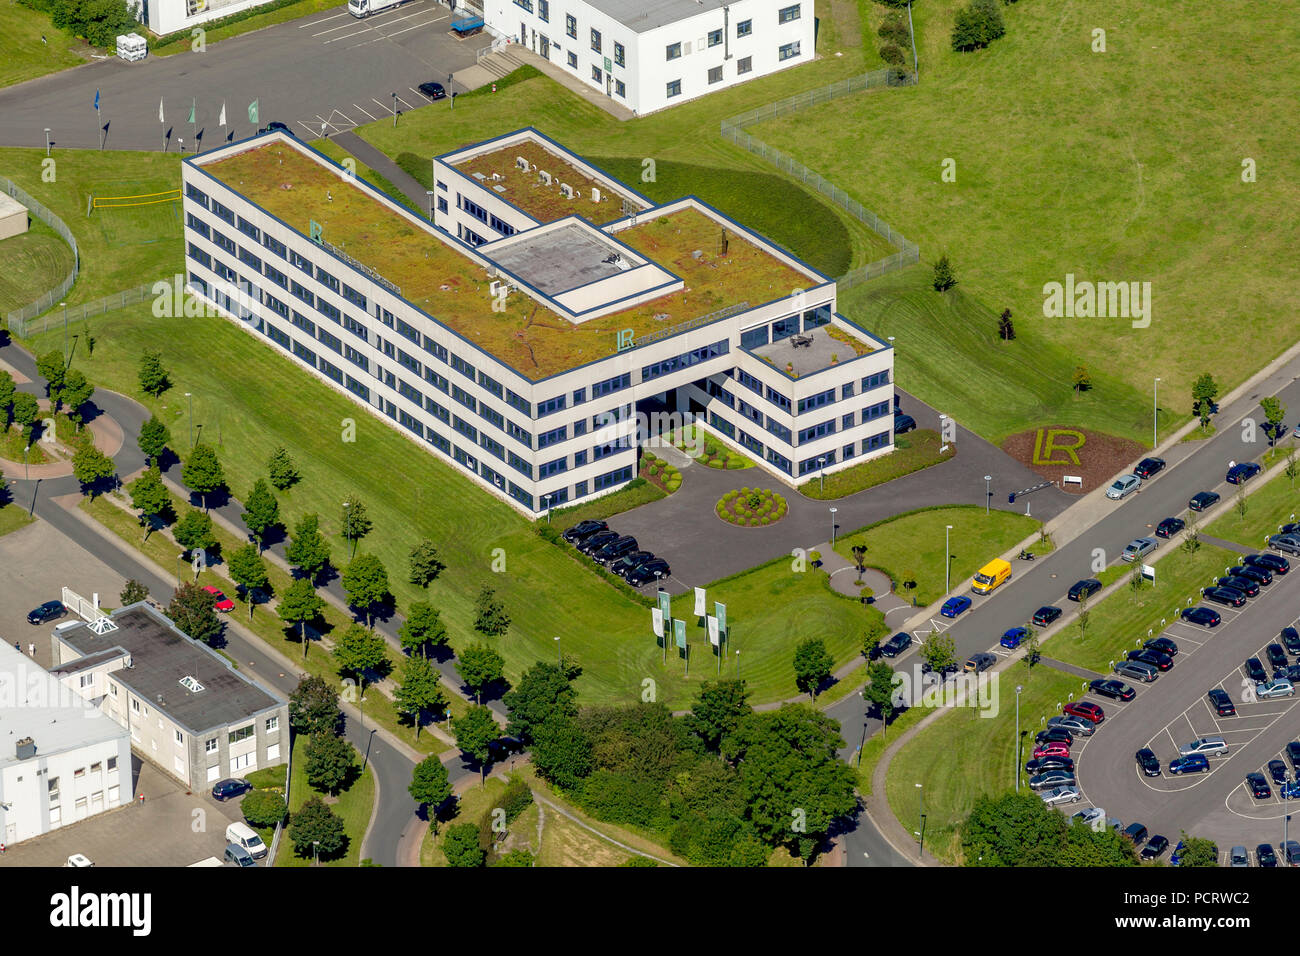 Luftbild, LR Health & Beauty Systems GmbH, Gewerbepark Olfetal, Ahlen, Ruhrgebiet, Nordrhein-Westfalen, Deutschland, Europa Stockfoto